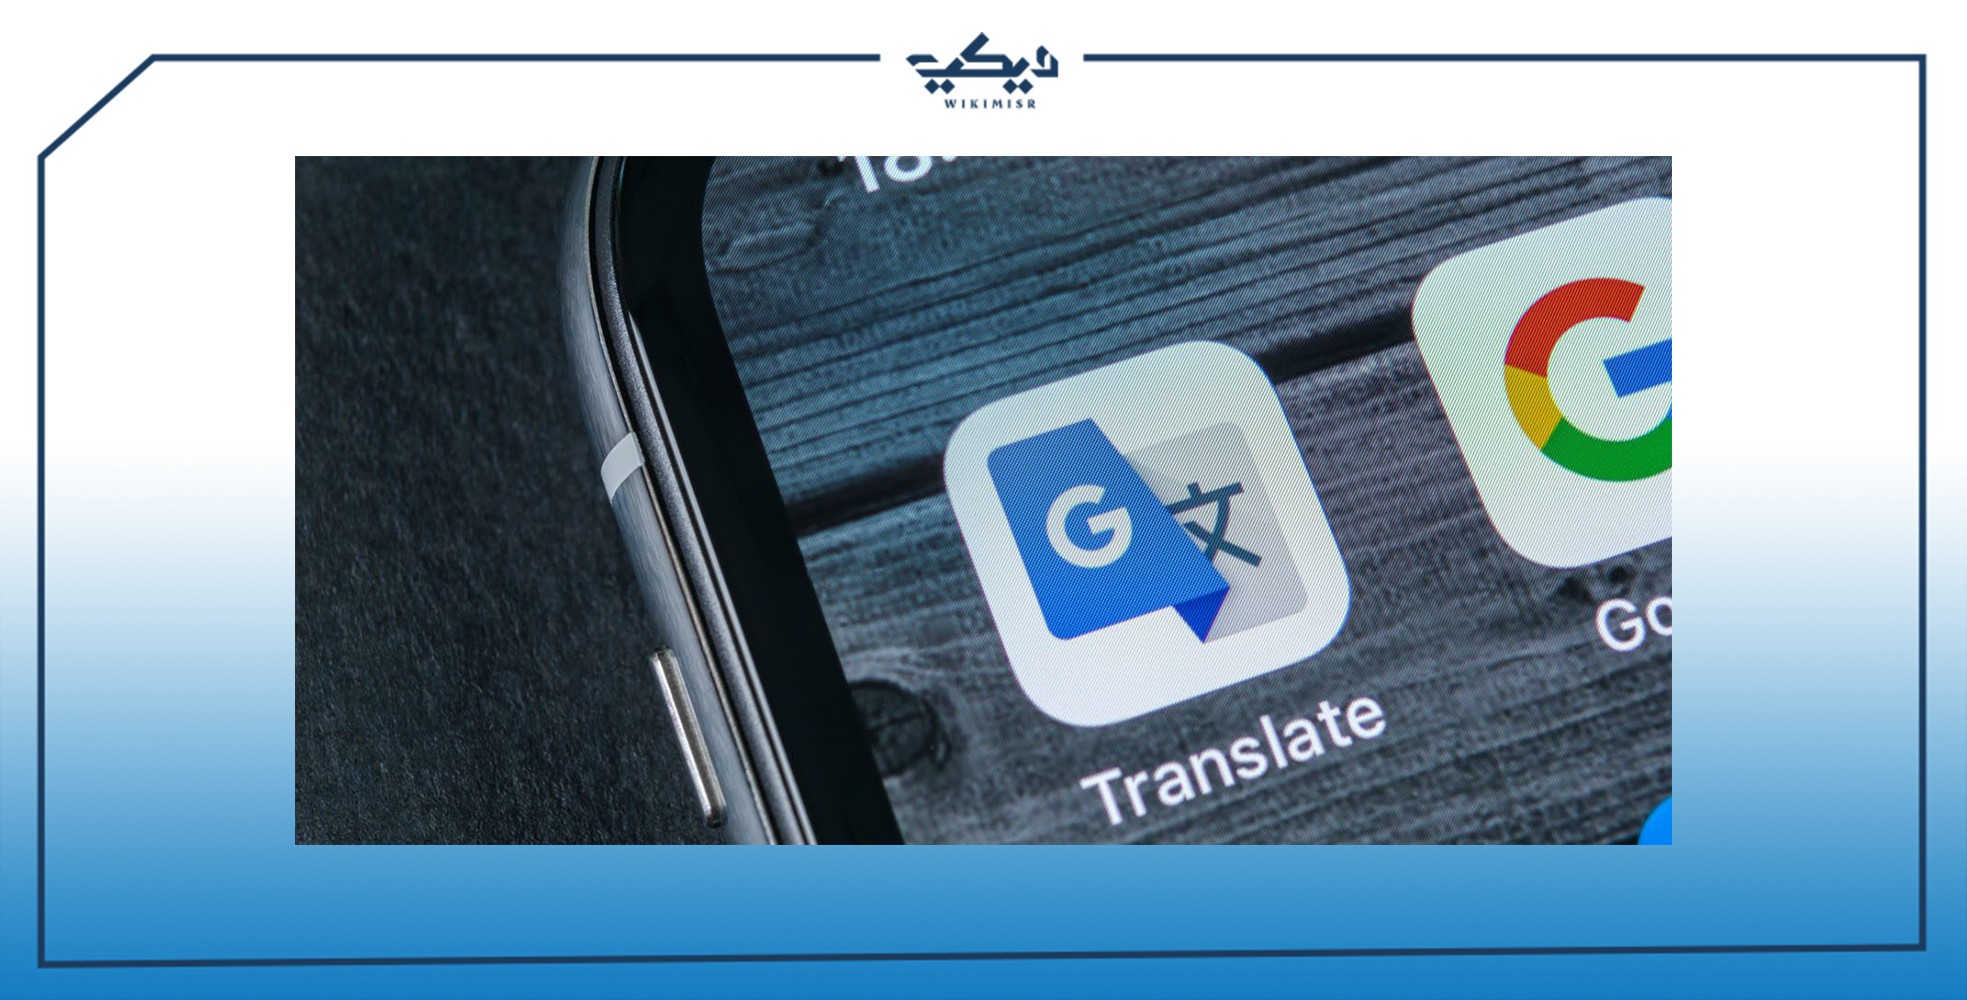 خدمة Google translate